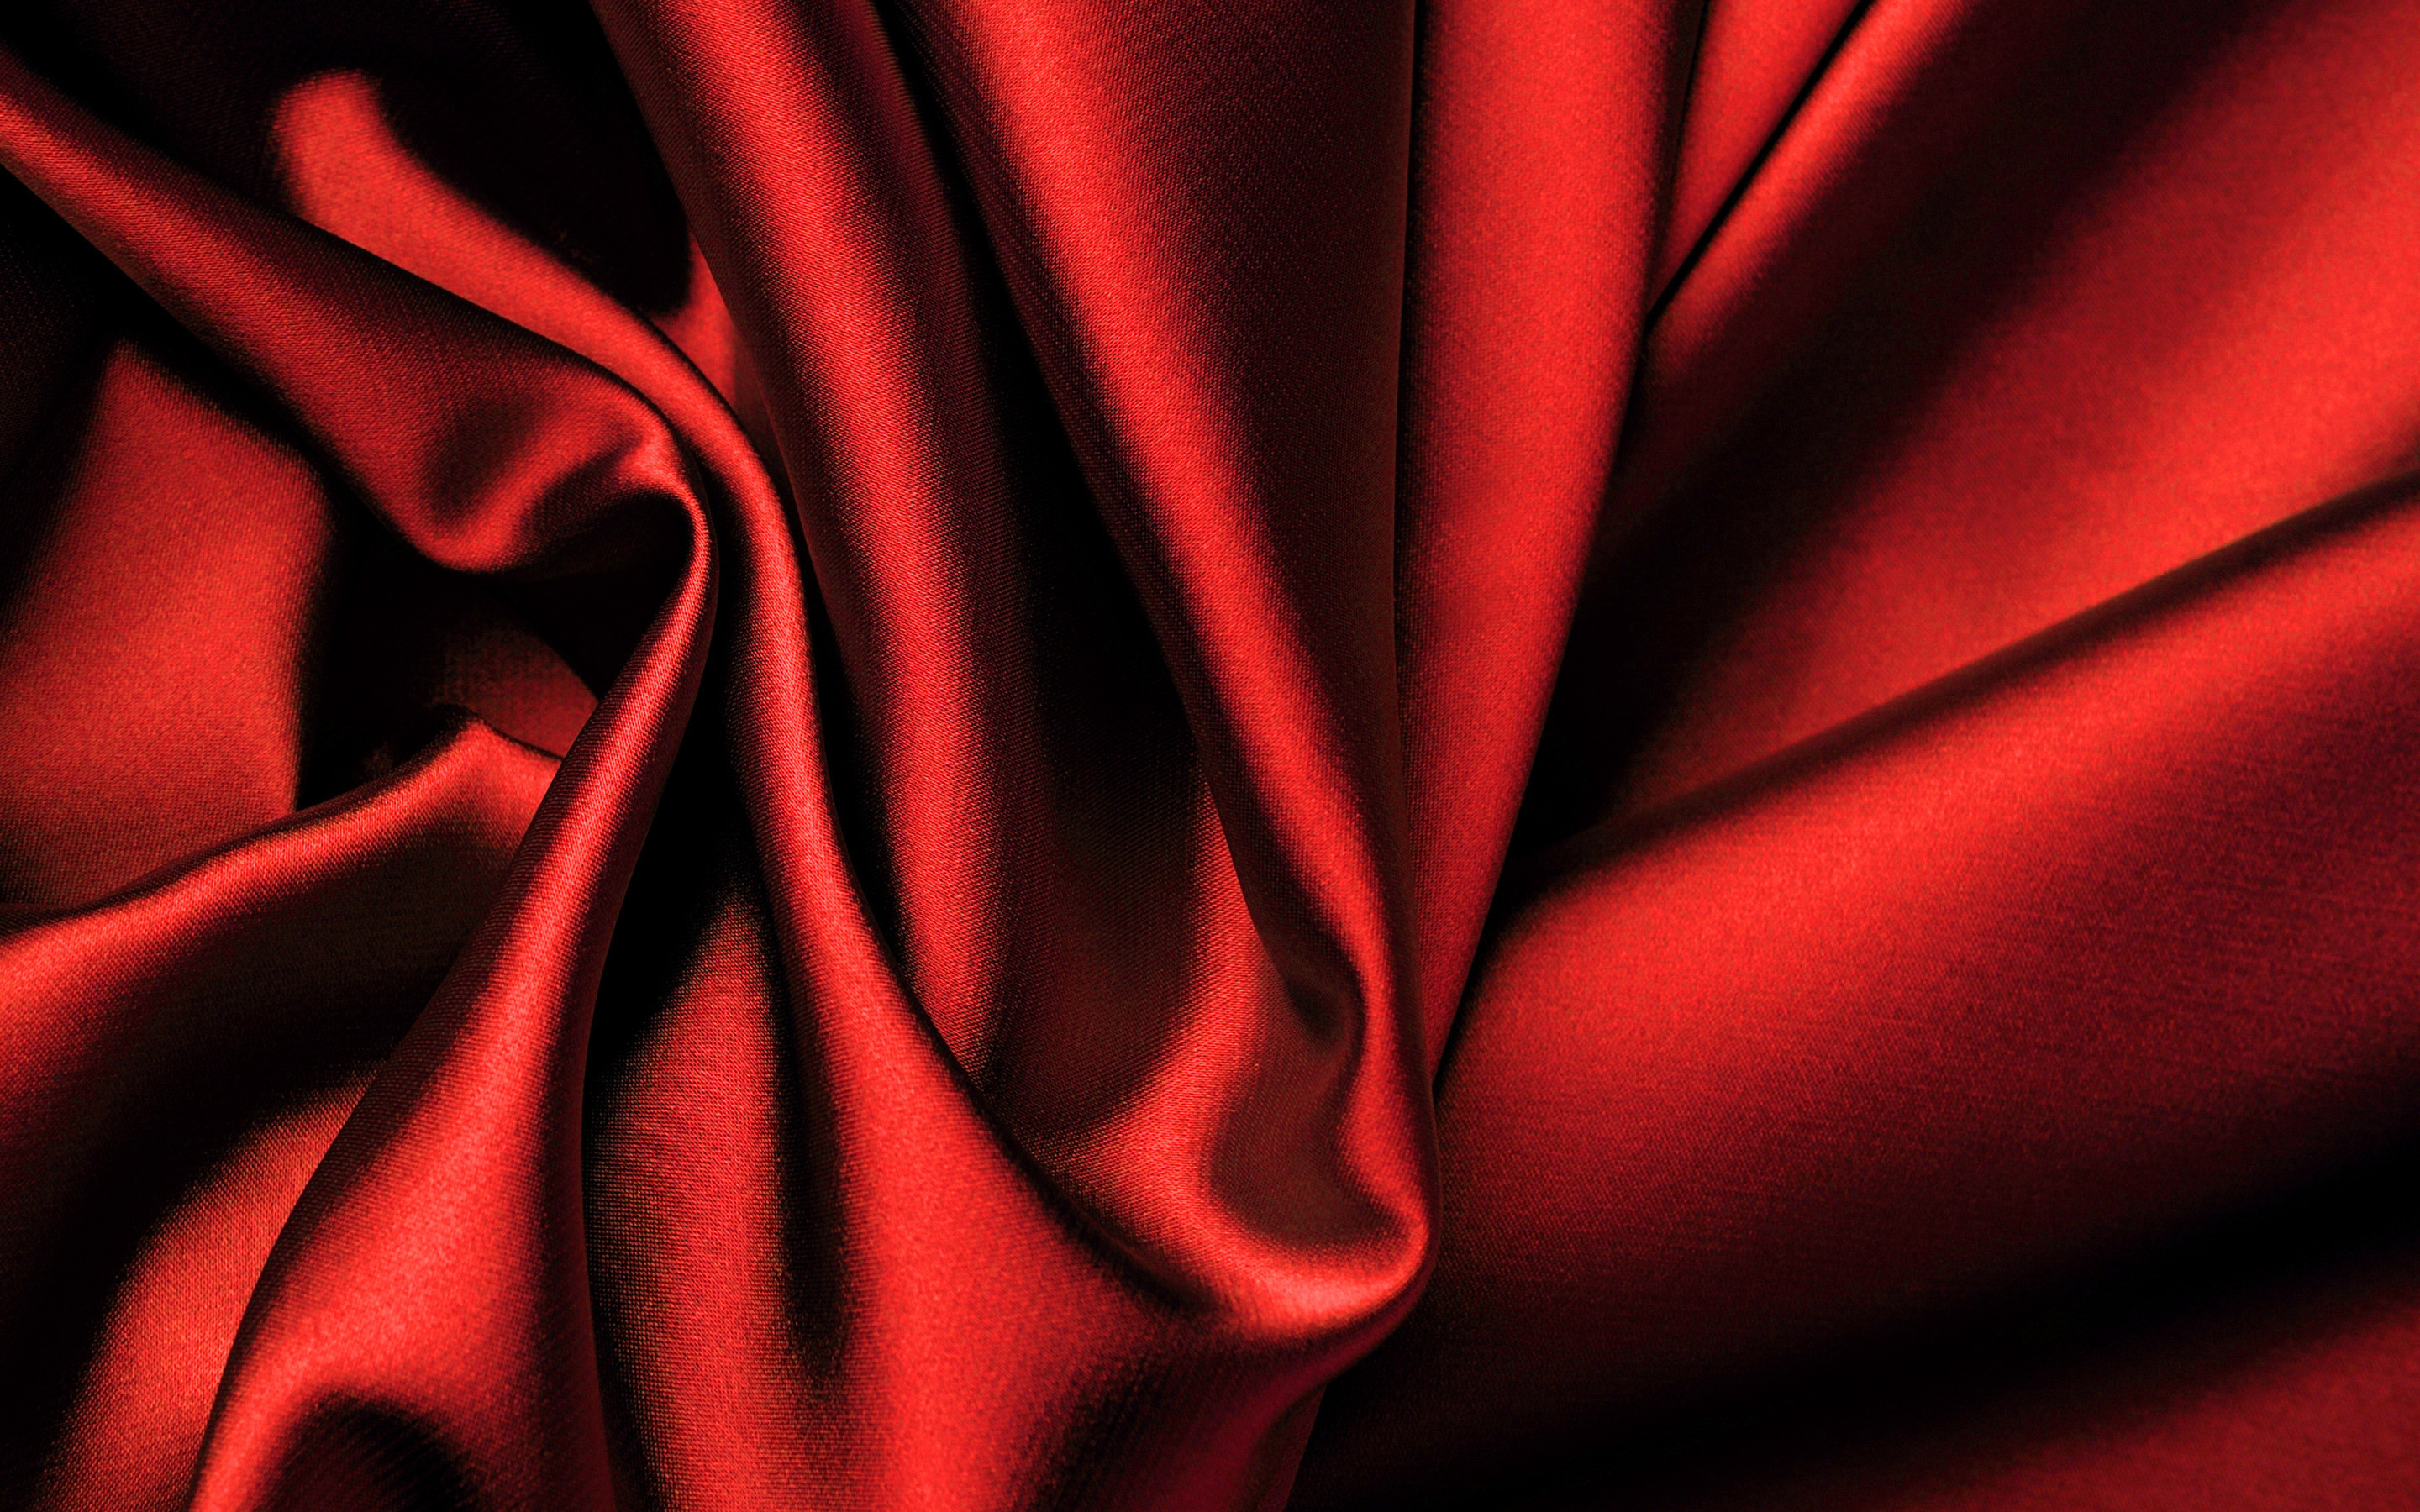 2880x1800, Red Silk Widescreen Wallpaper 20077 Data - High Resolution Red  Satin Background - 2880x1800 Wallpaper 